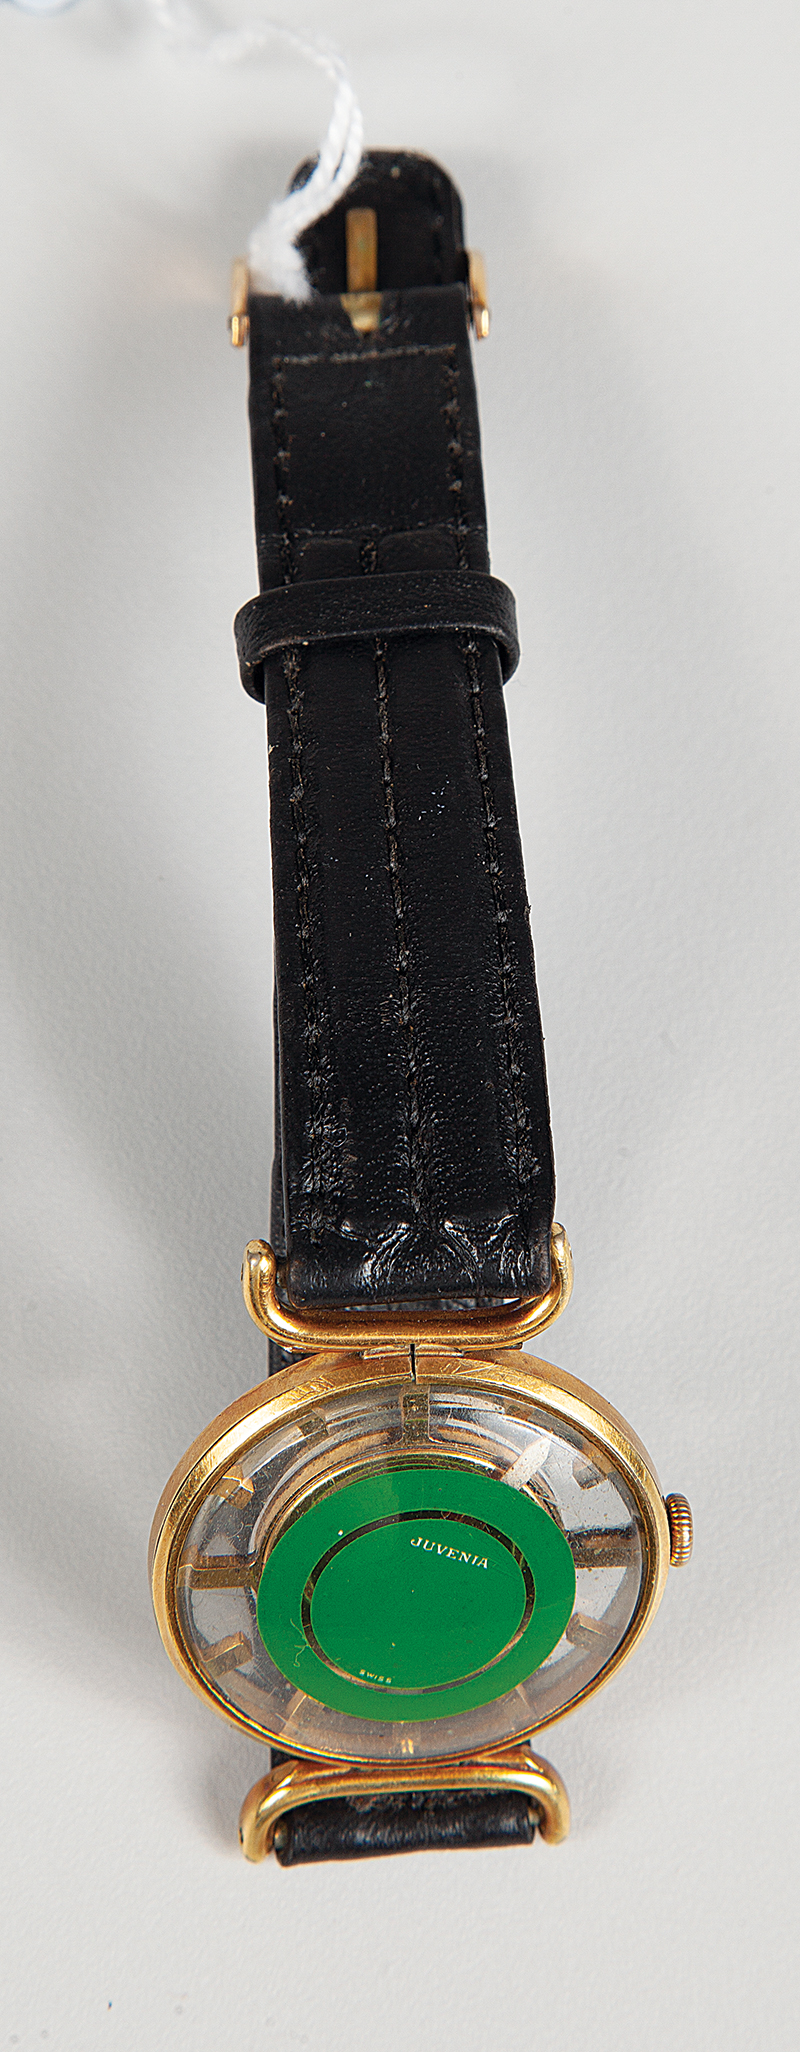 Juvenia relógio a corda modelo esquileto feminino funcionando em bom estado, pulseira original.